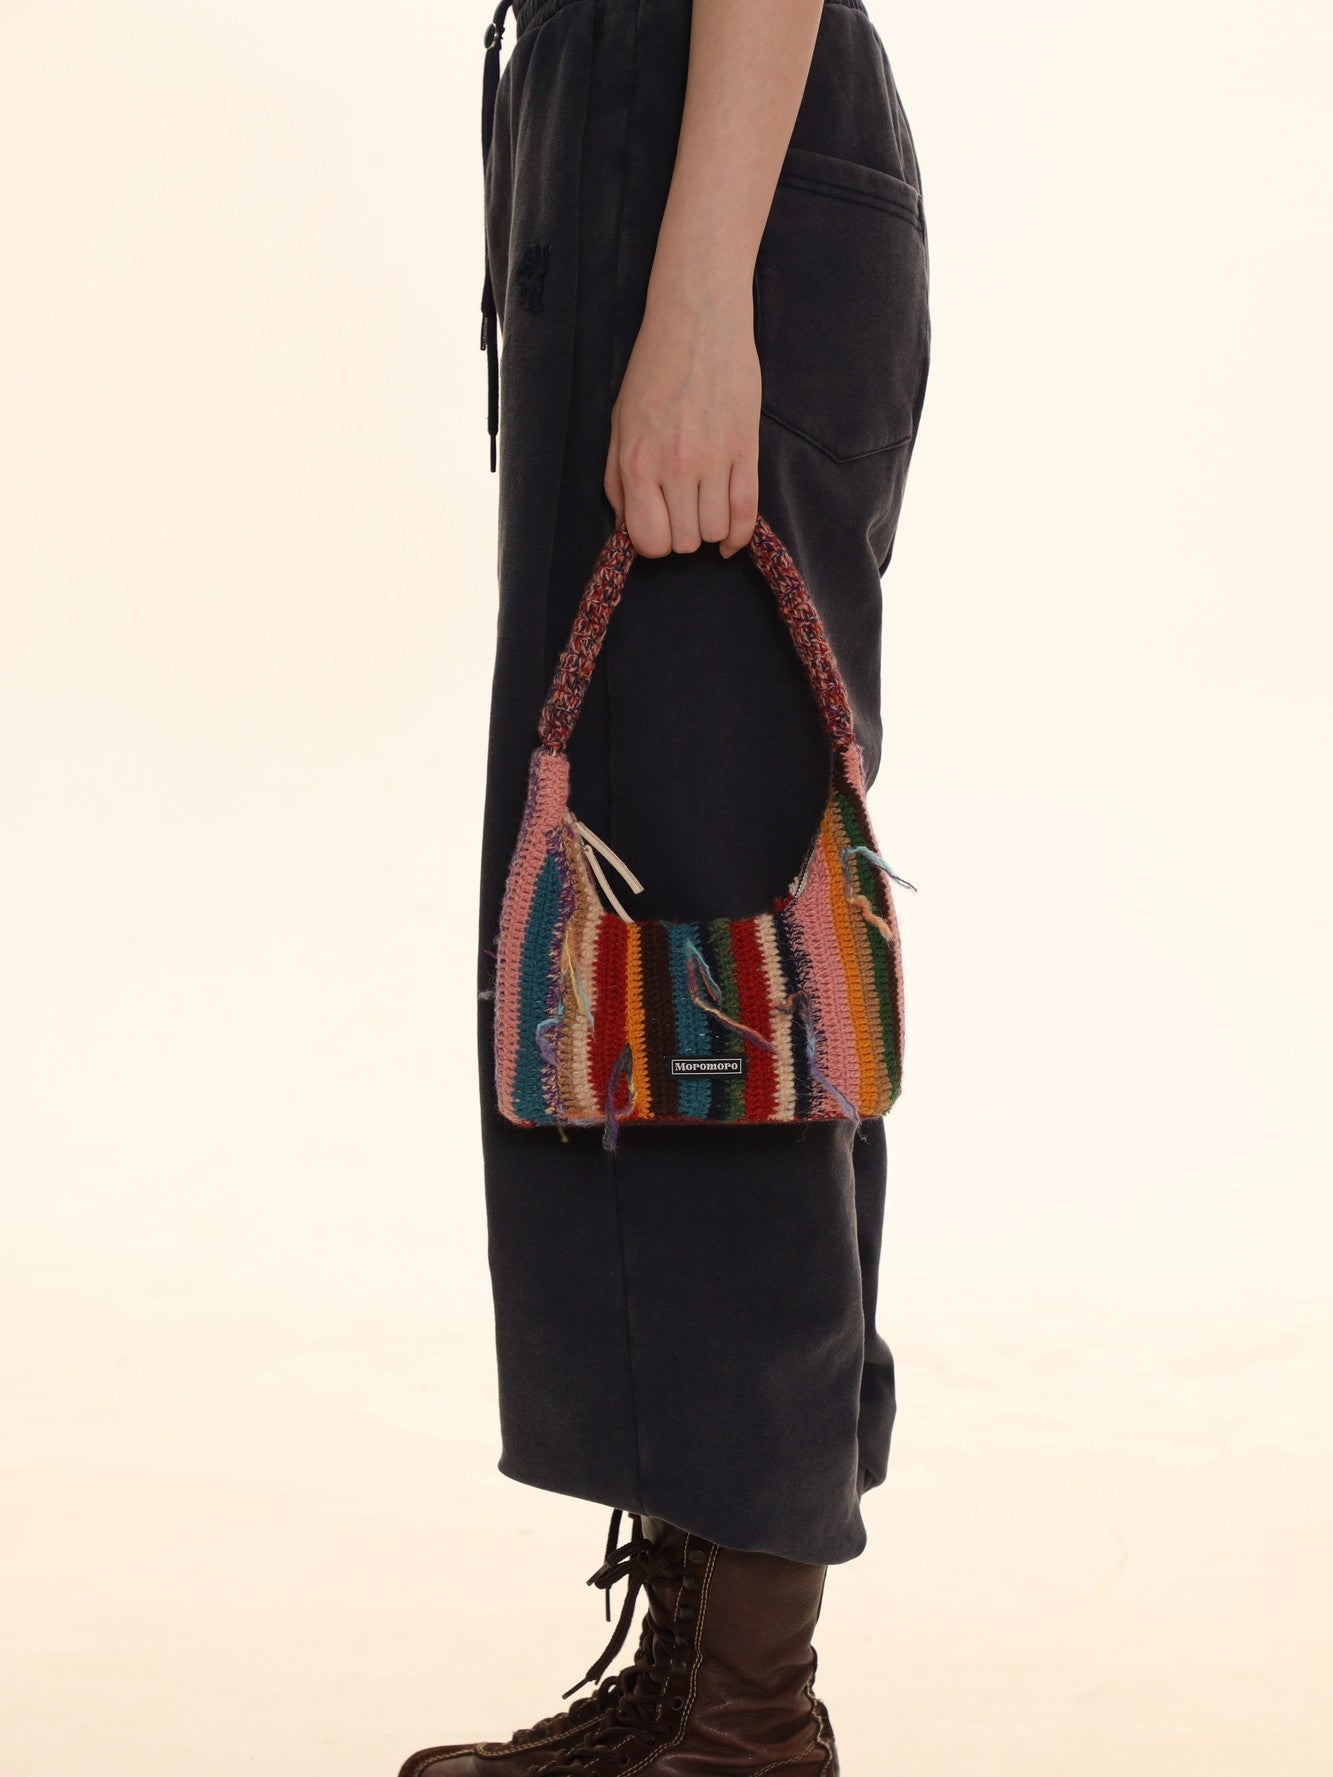 Vibrant Multicolored Knit Bag - chiclara